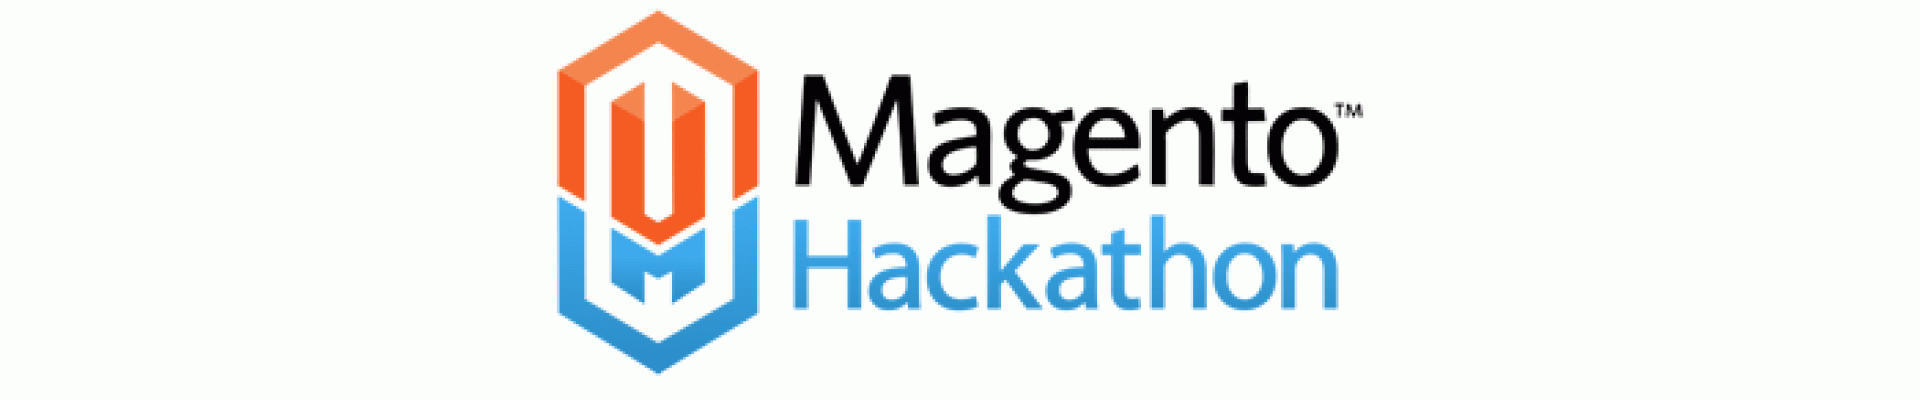 Magento Hackathon München